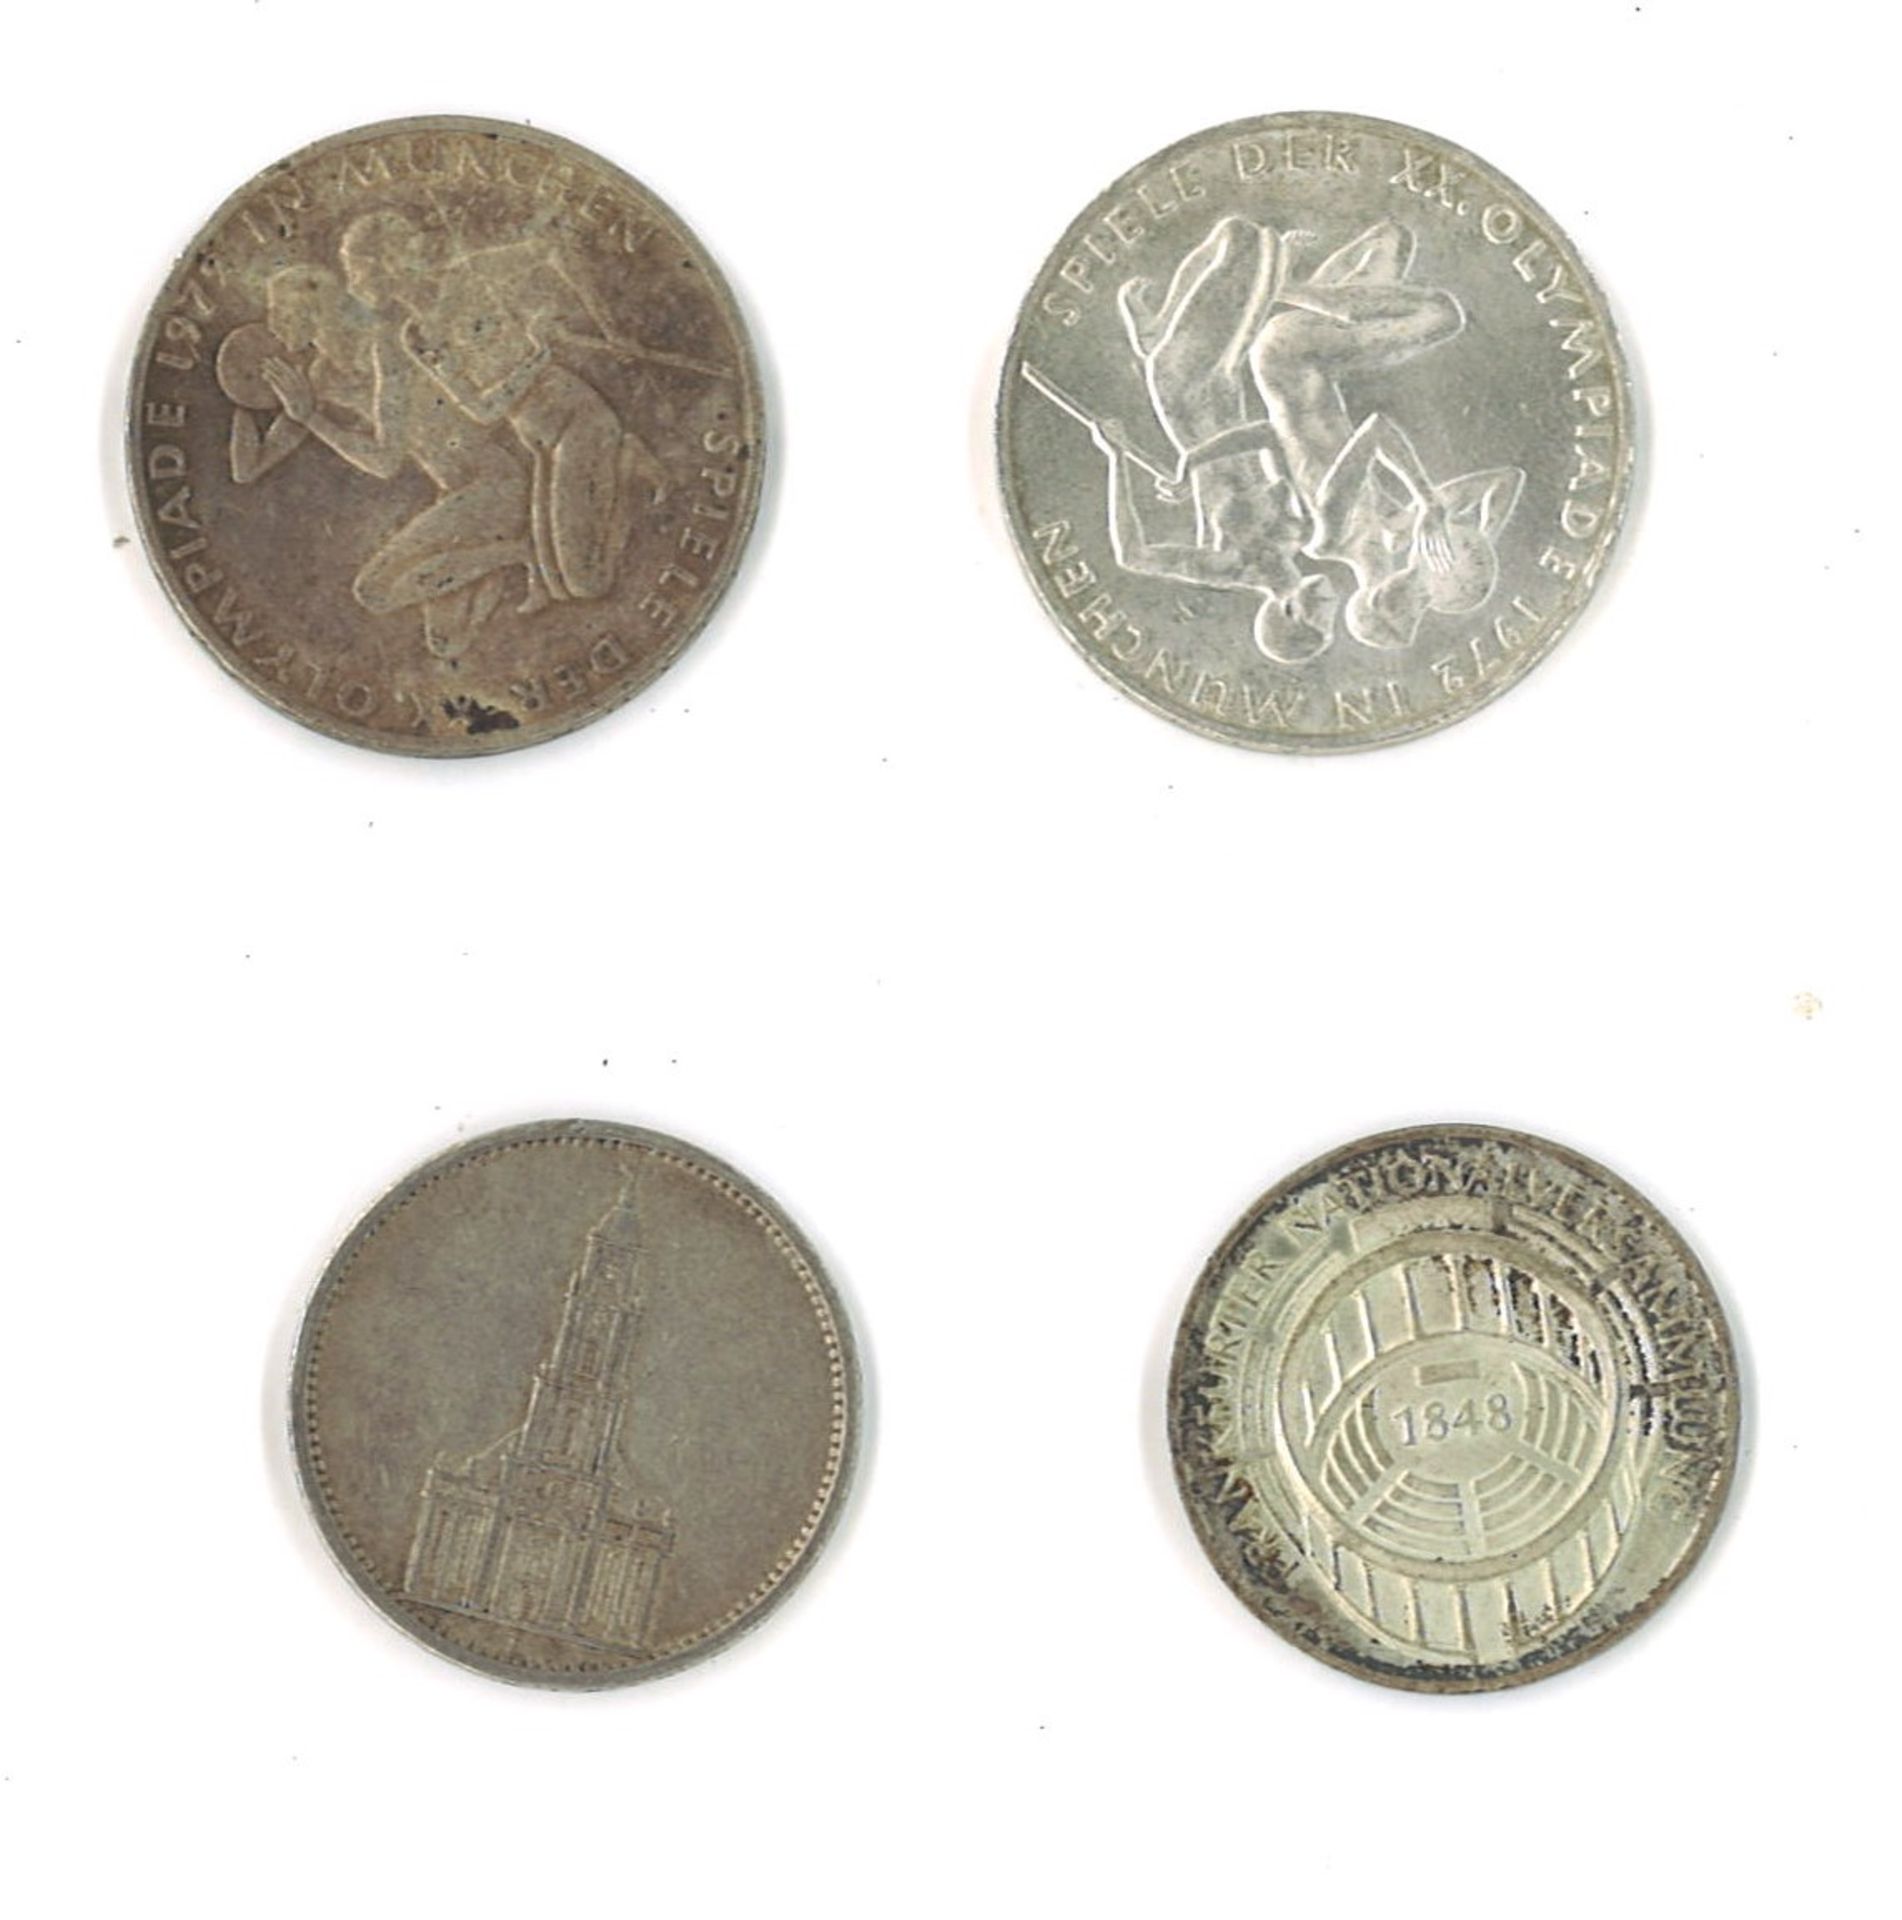 Lot Münzen BRD, bestehend aus 2x 10 DM, 1x 5 DM, sowie 1x 5 Mark Deutsches Reich